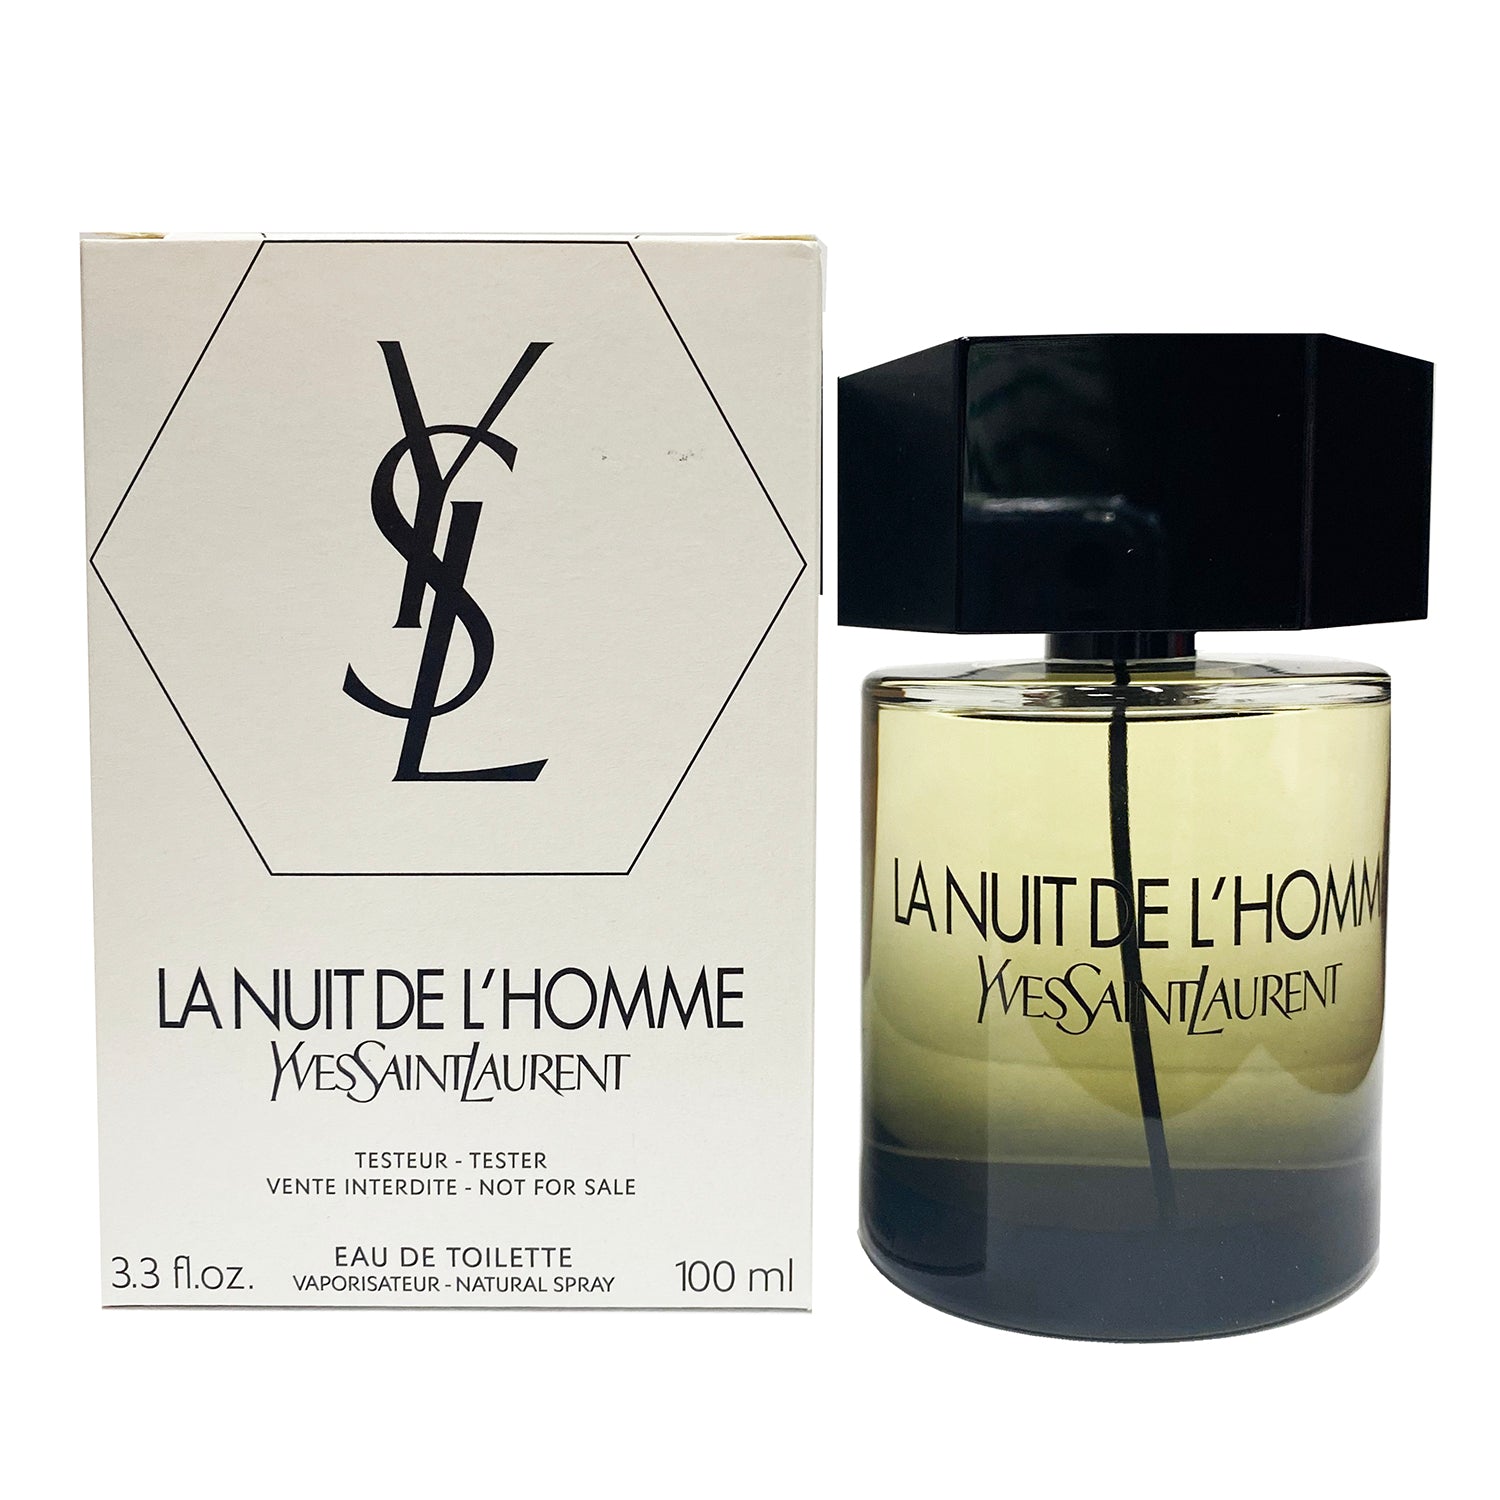 La Nuit L'Homme Le Parfum EDP Spray by Yves Saint Laurent // 3.4